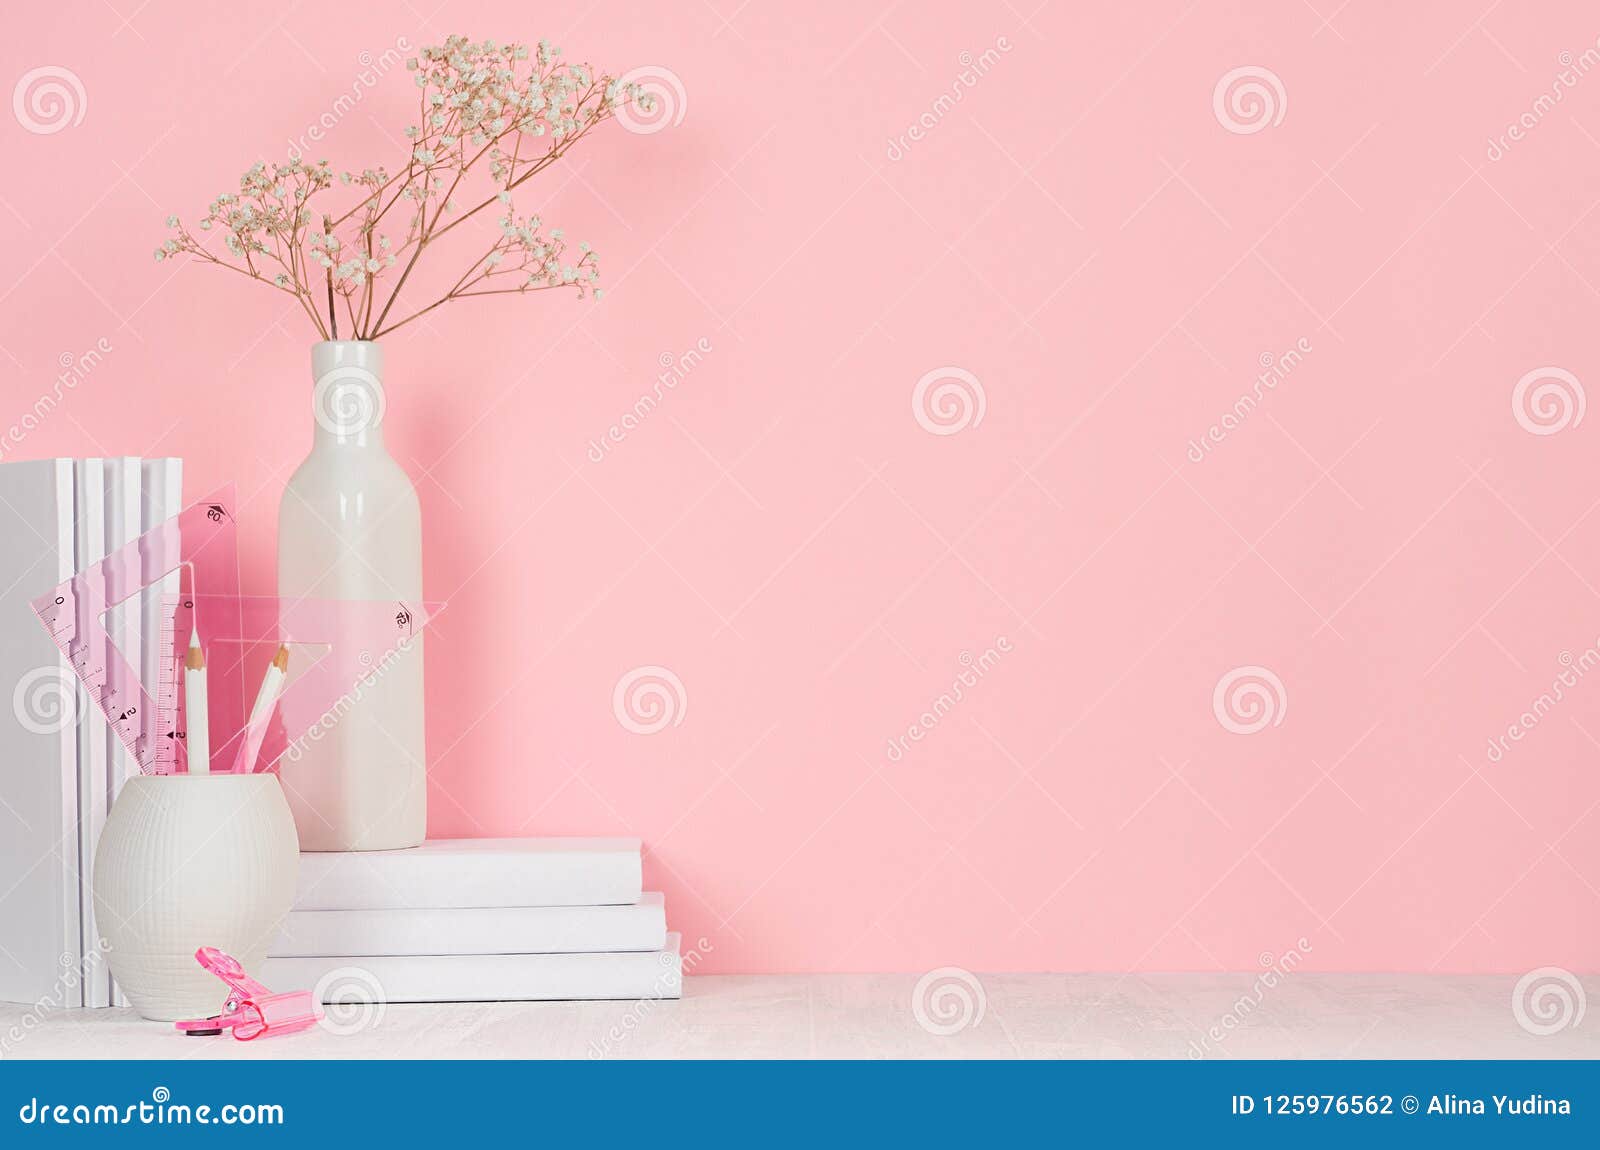 Bạn có muốn trang trí cho văn phòng của mình thêm sắc màu với một bó hoa đơn giản nhưng đầy tươi sáng và sinh động như một bó hoa văn phòng? Hãy xem hình ảnh một bó hoa văn phòng với hoa hồng và hoa baby\'s breath tuyệt đẹp và cảm nhận sự tươi mới mà nó mang lại cho không gian làm việc của bạn.